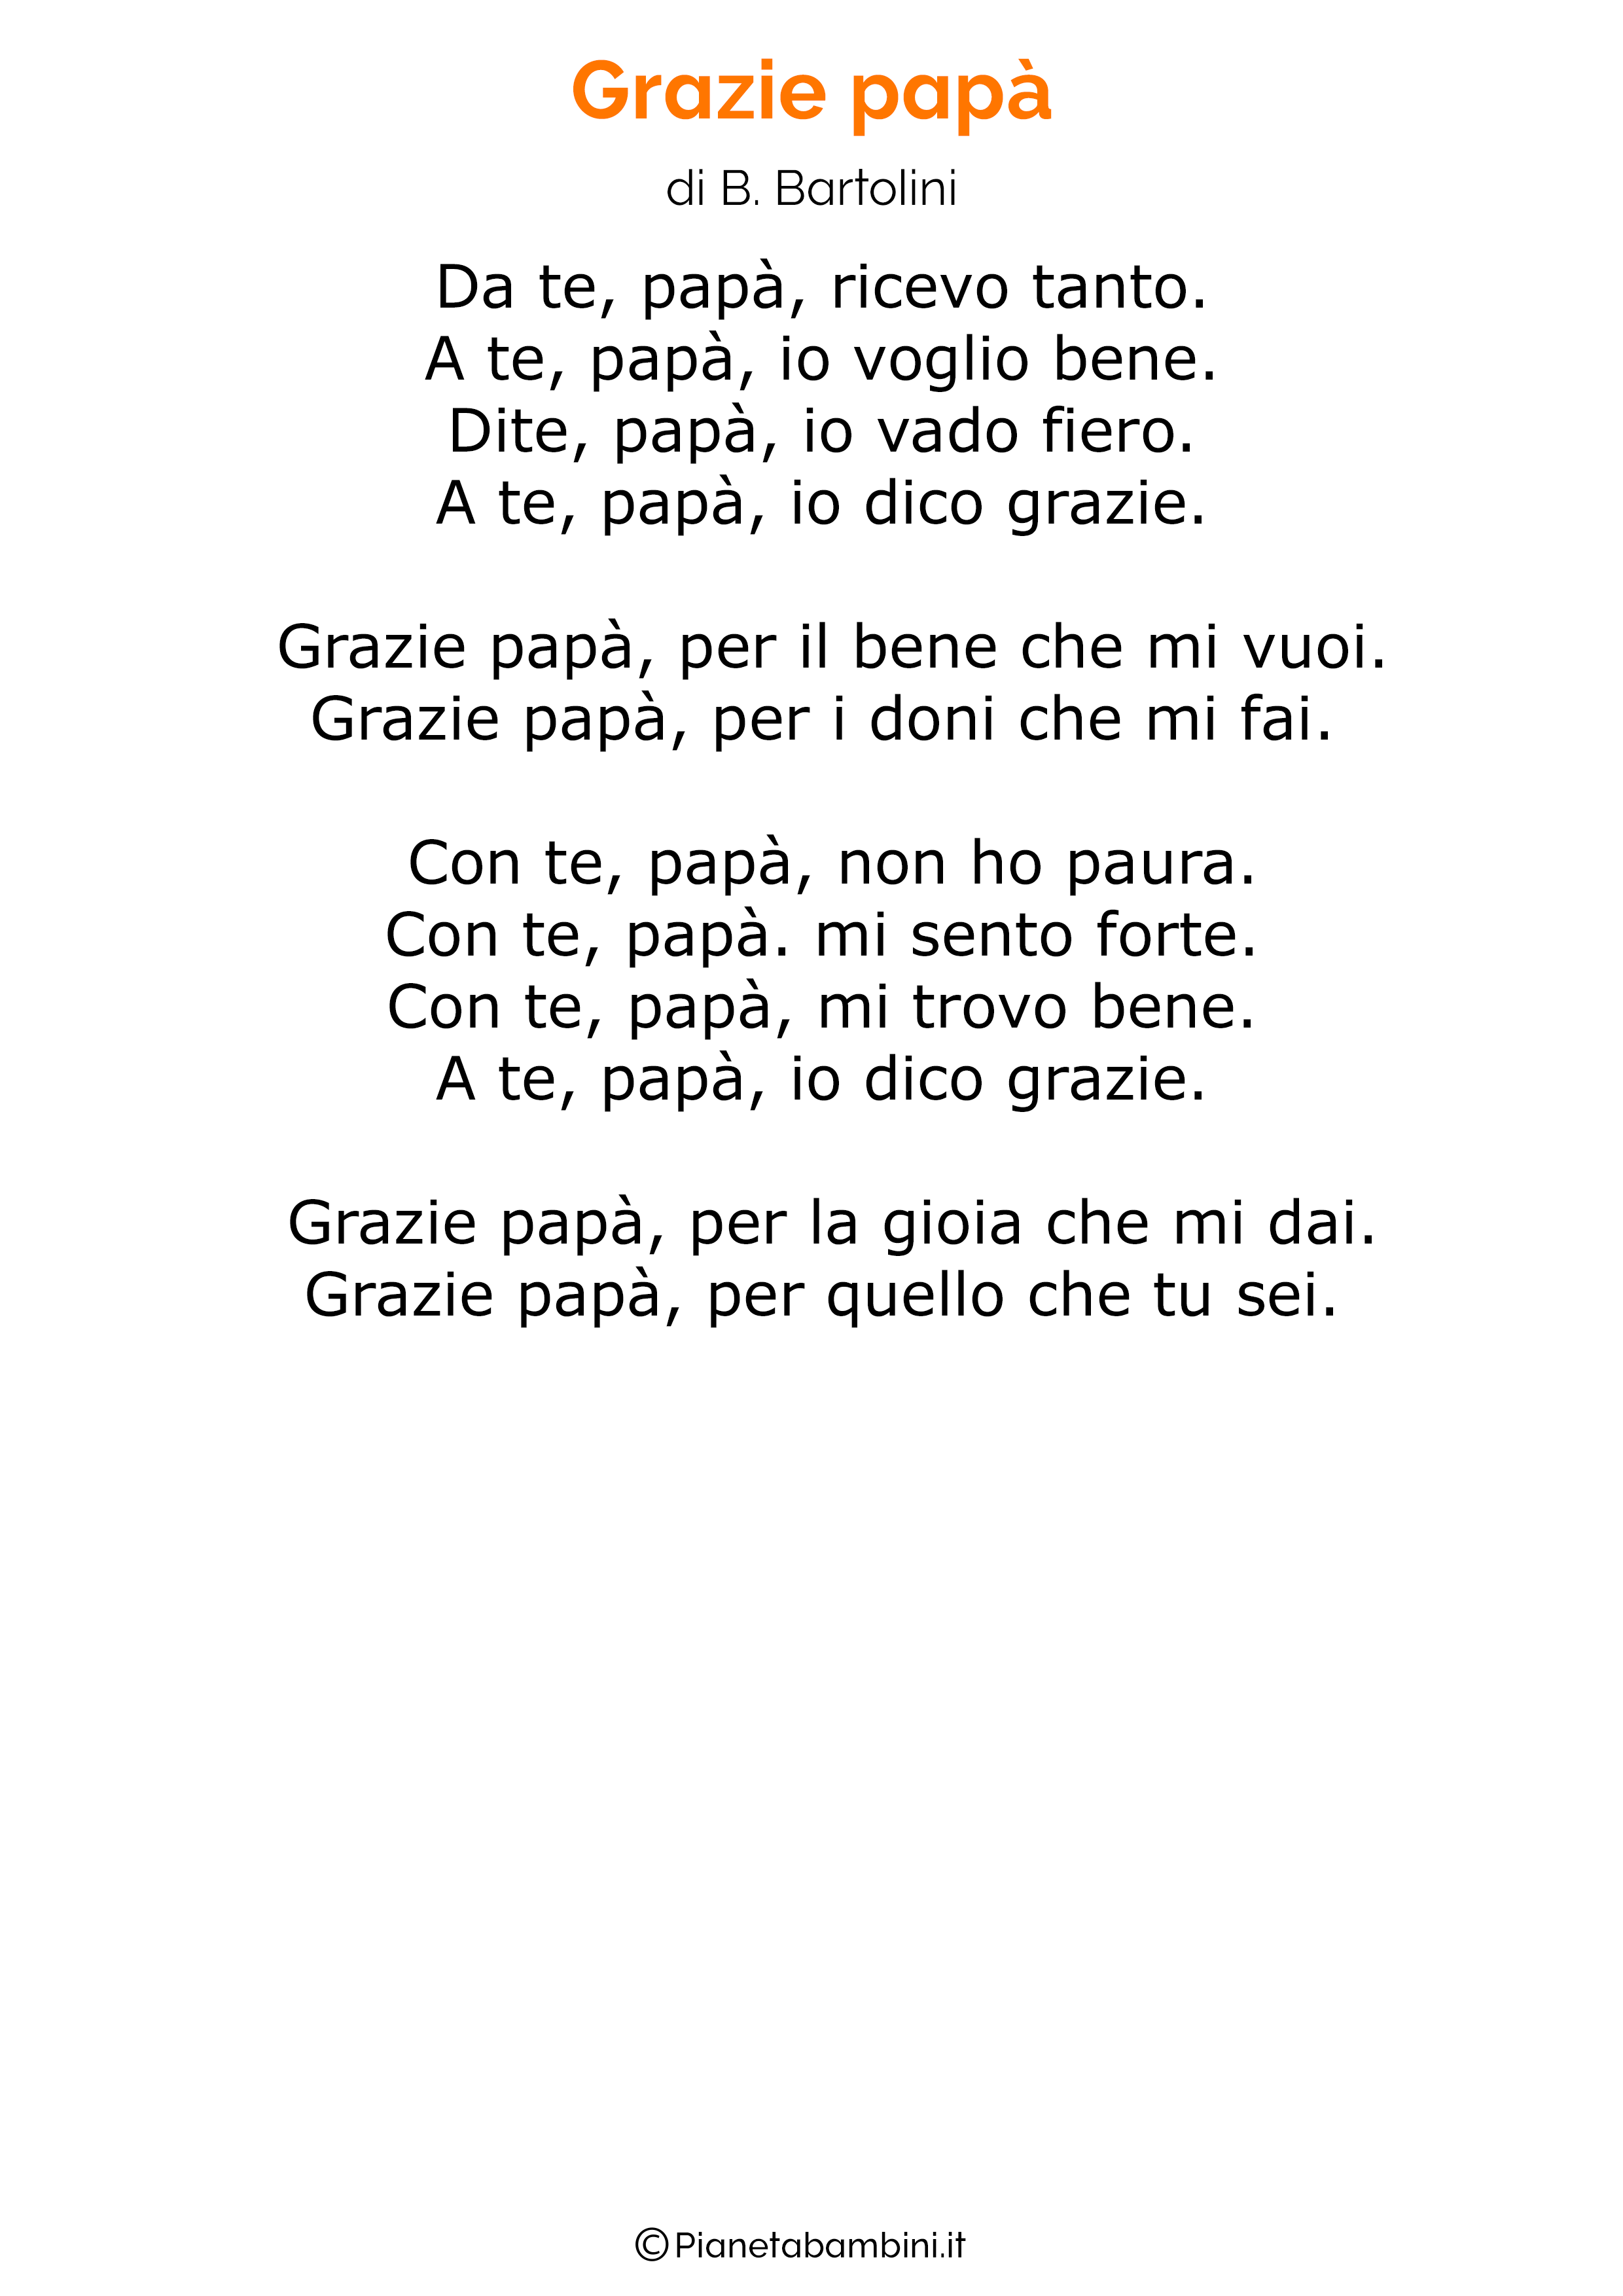 Poesia per la festa del papa per bambini 31